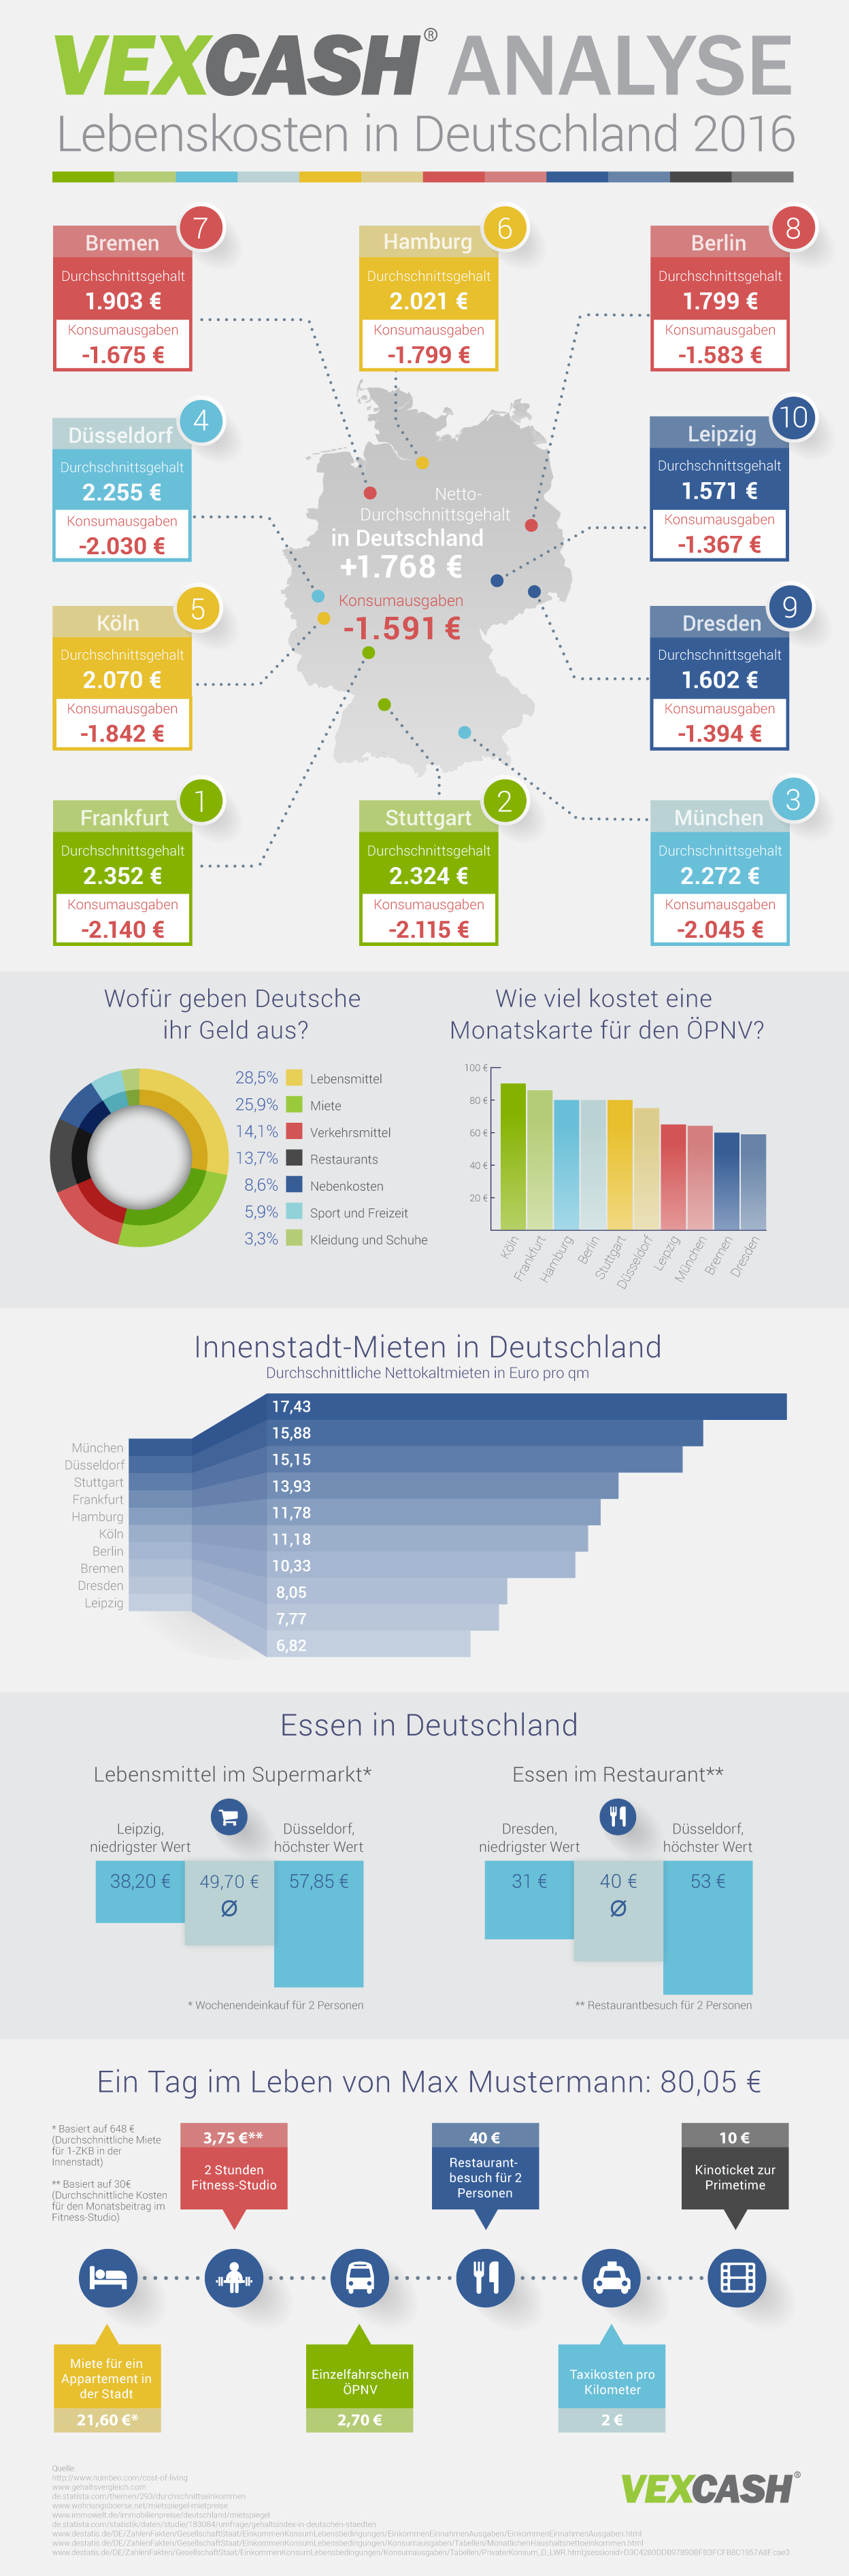 Infografik von den Lebenskosten in Deutschland von 2016